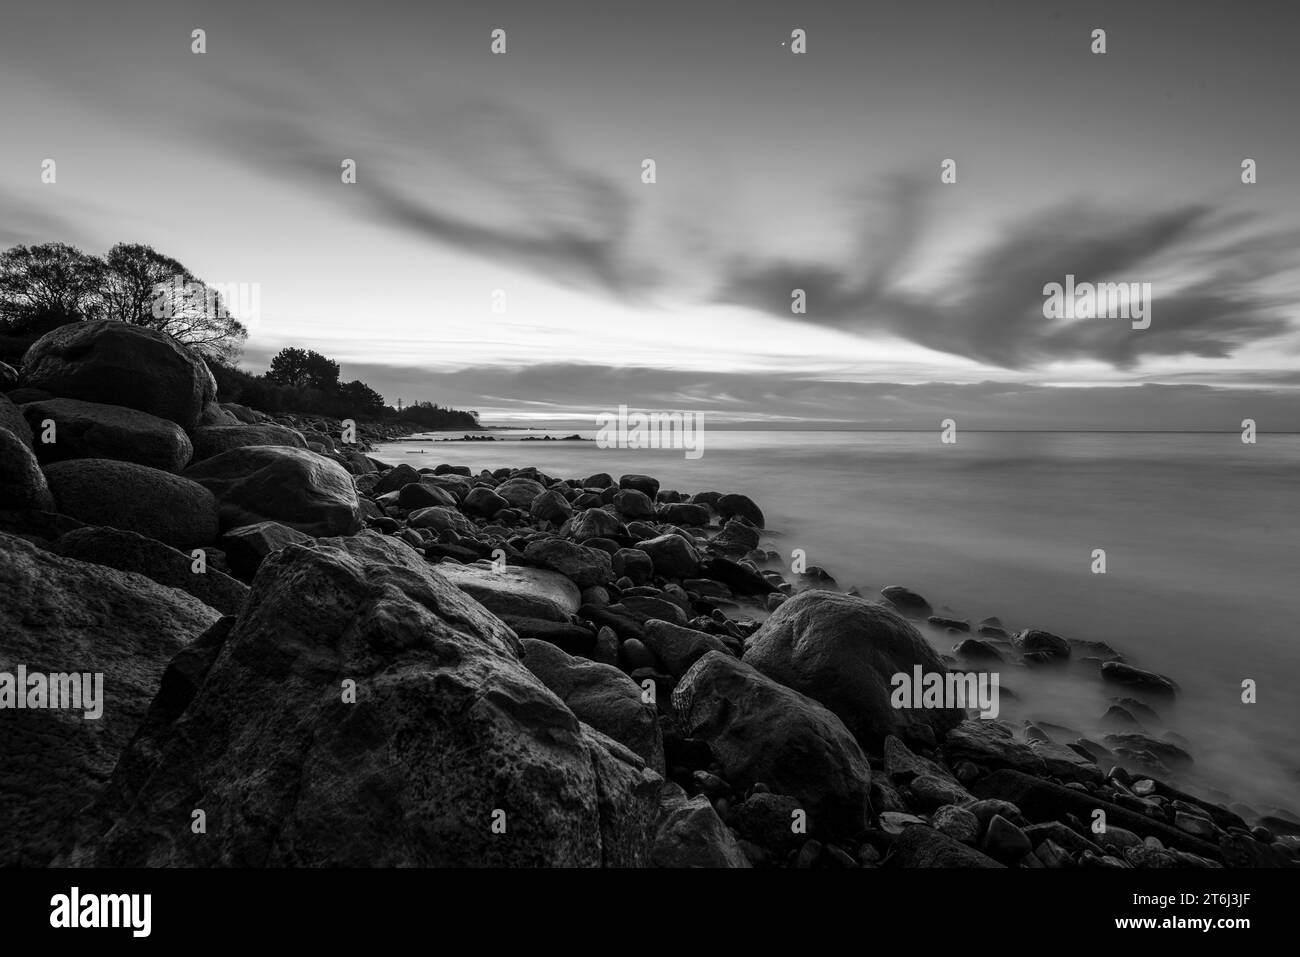 Amanecer en la playa de Hovmarken, isla del Mar Báltico Mon, Dinamarca Foto de stock